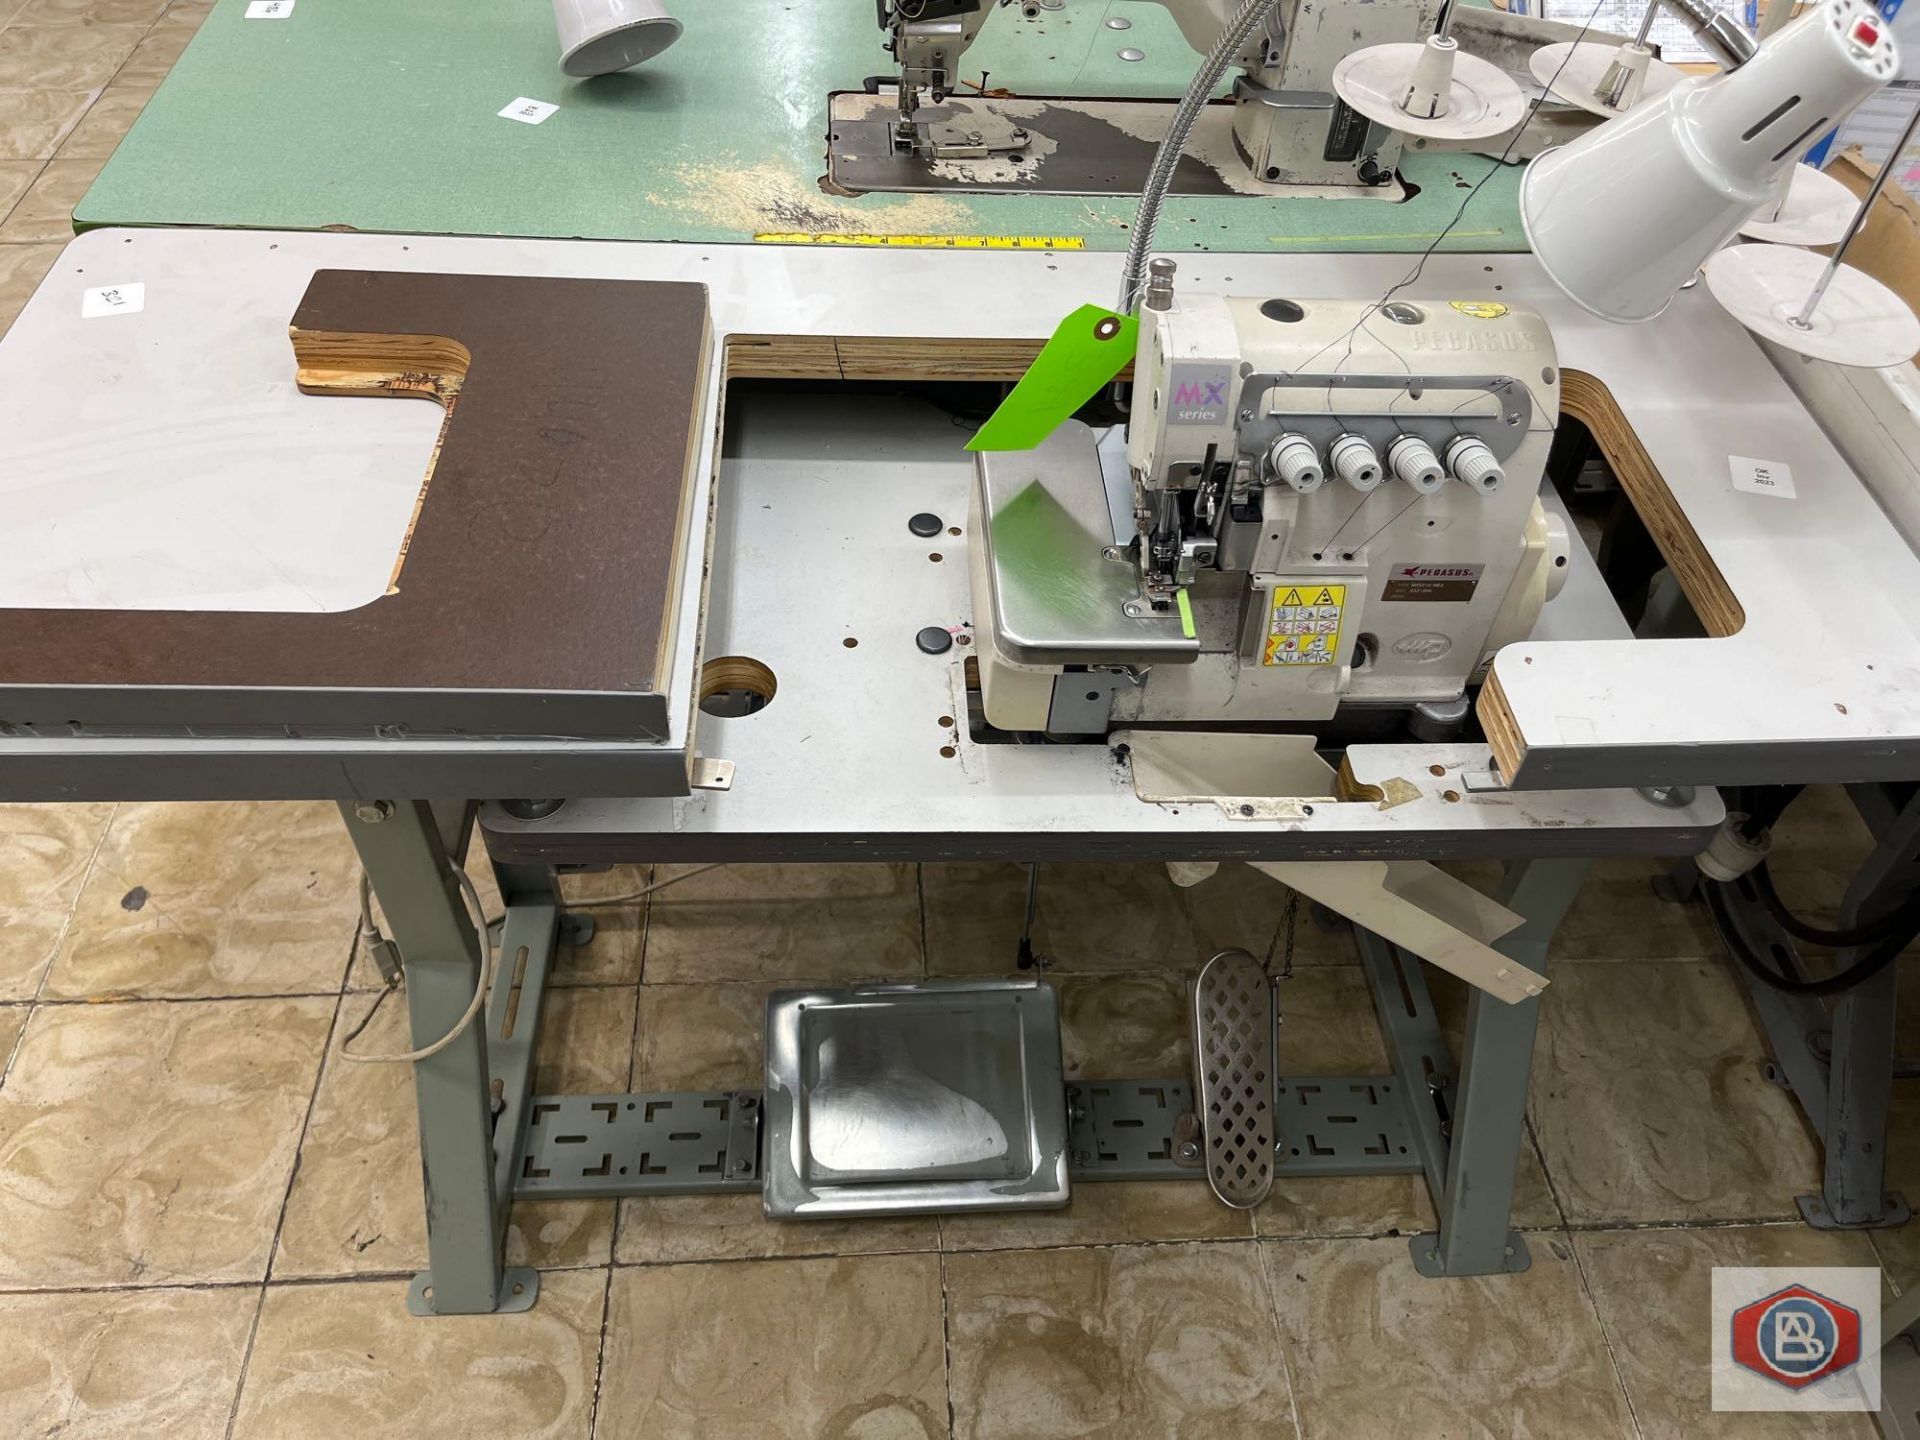 Pegasus Sewing Machine - Image 2 of 3